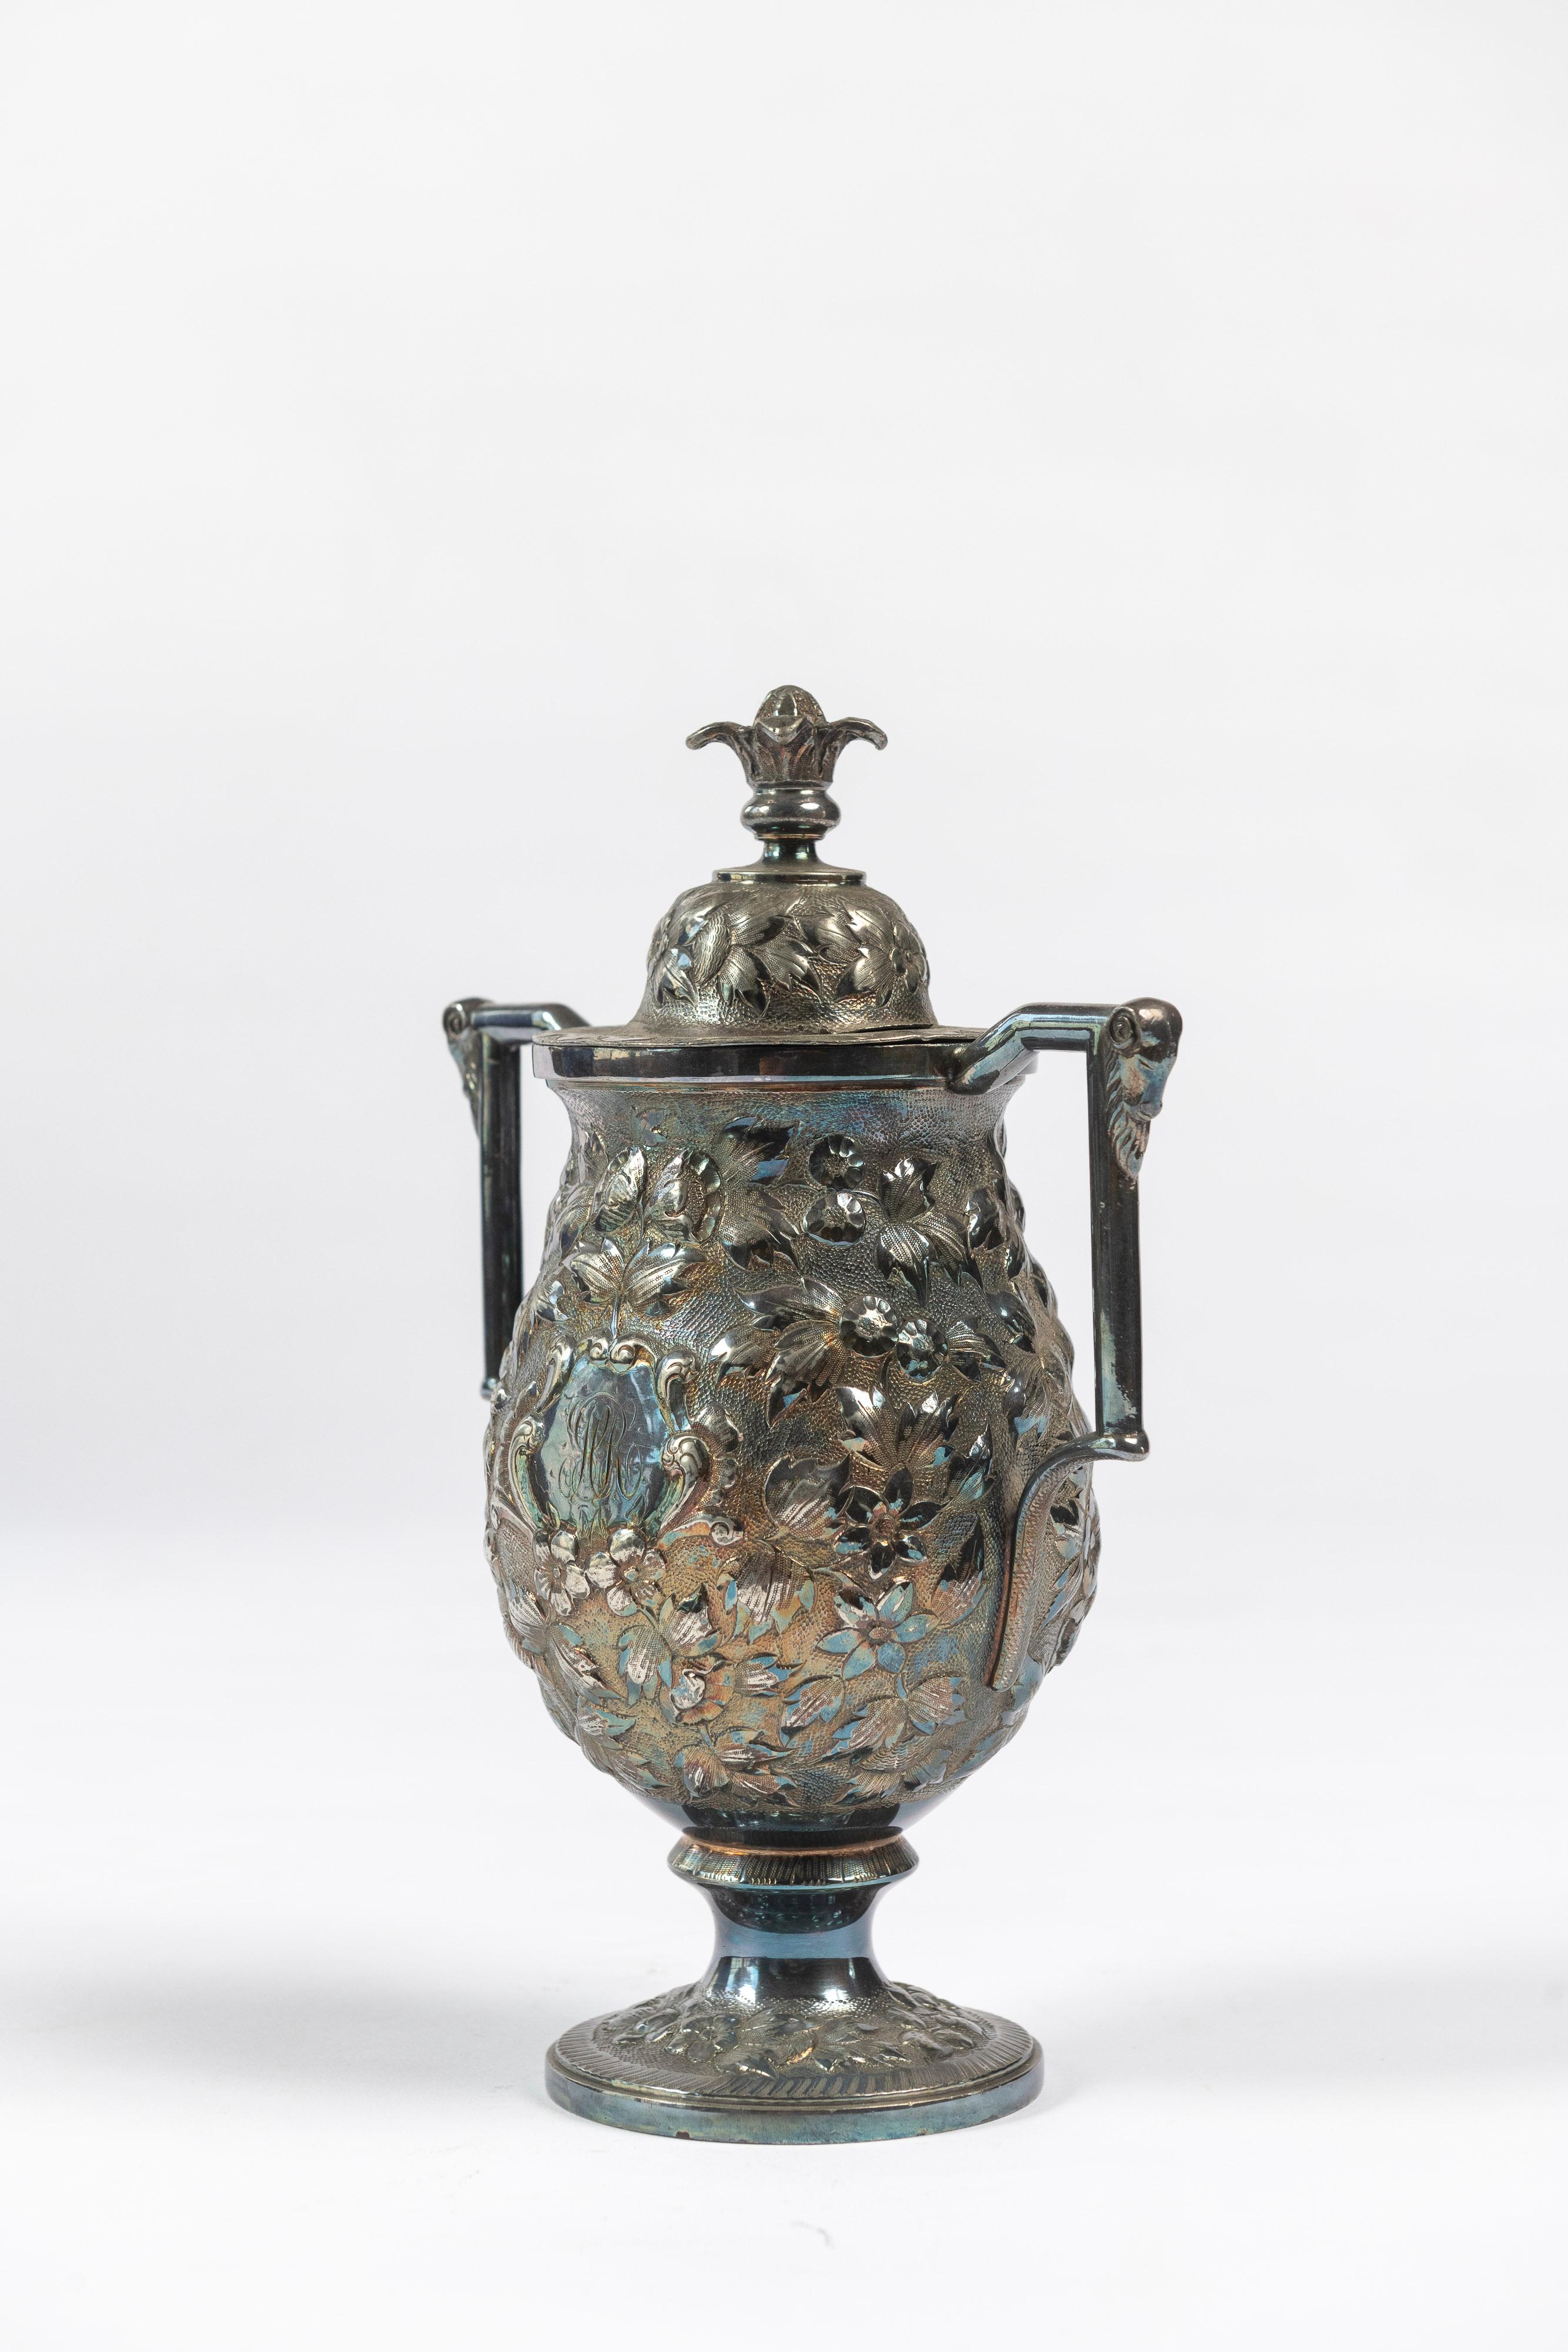 Antike versilberte Tee-Urne, mit verzierten Armen und Deckel, aus den späten 1800er Jahren, hergestellt in Baltimore, MD, von Chas. Hamill & Co. Ein hübsches Gefäß, in dem man allerlei Leckereien aufbewahren kann, obwohl es ursprünglich für losen